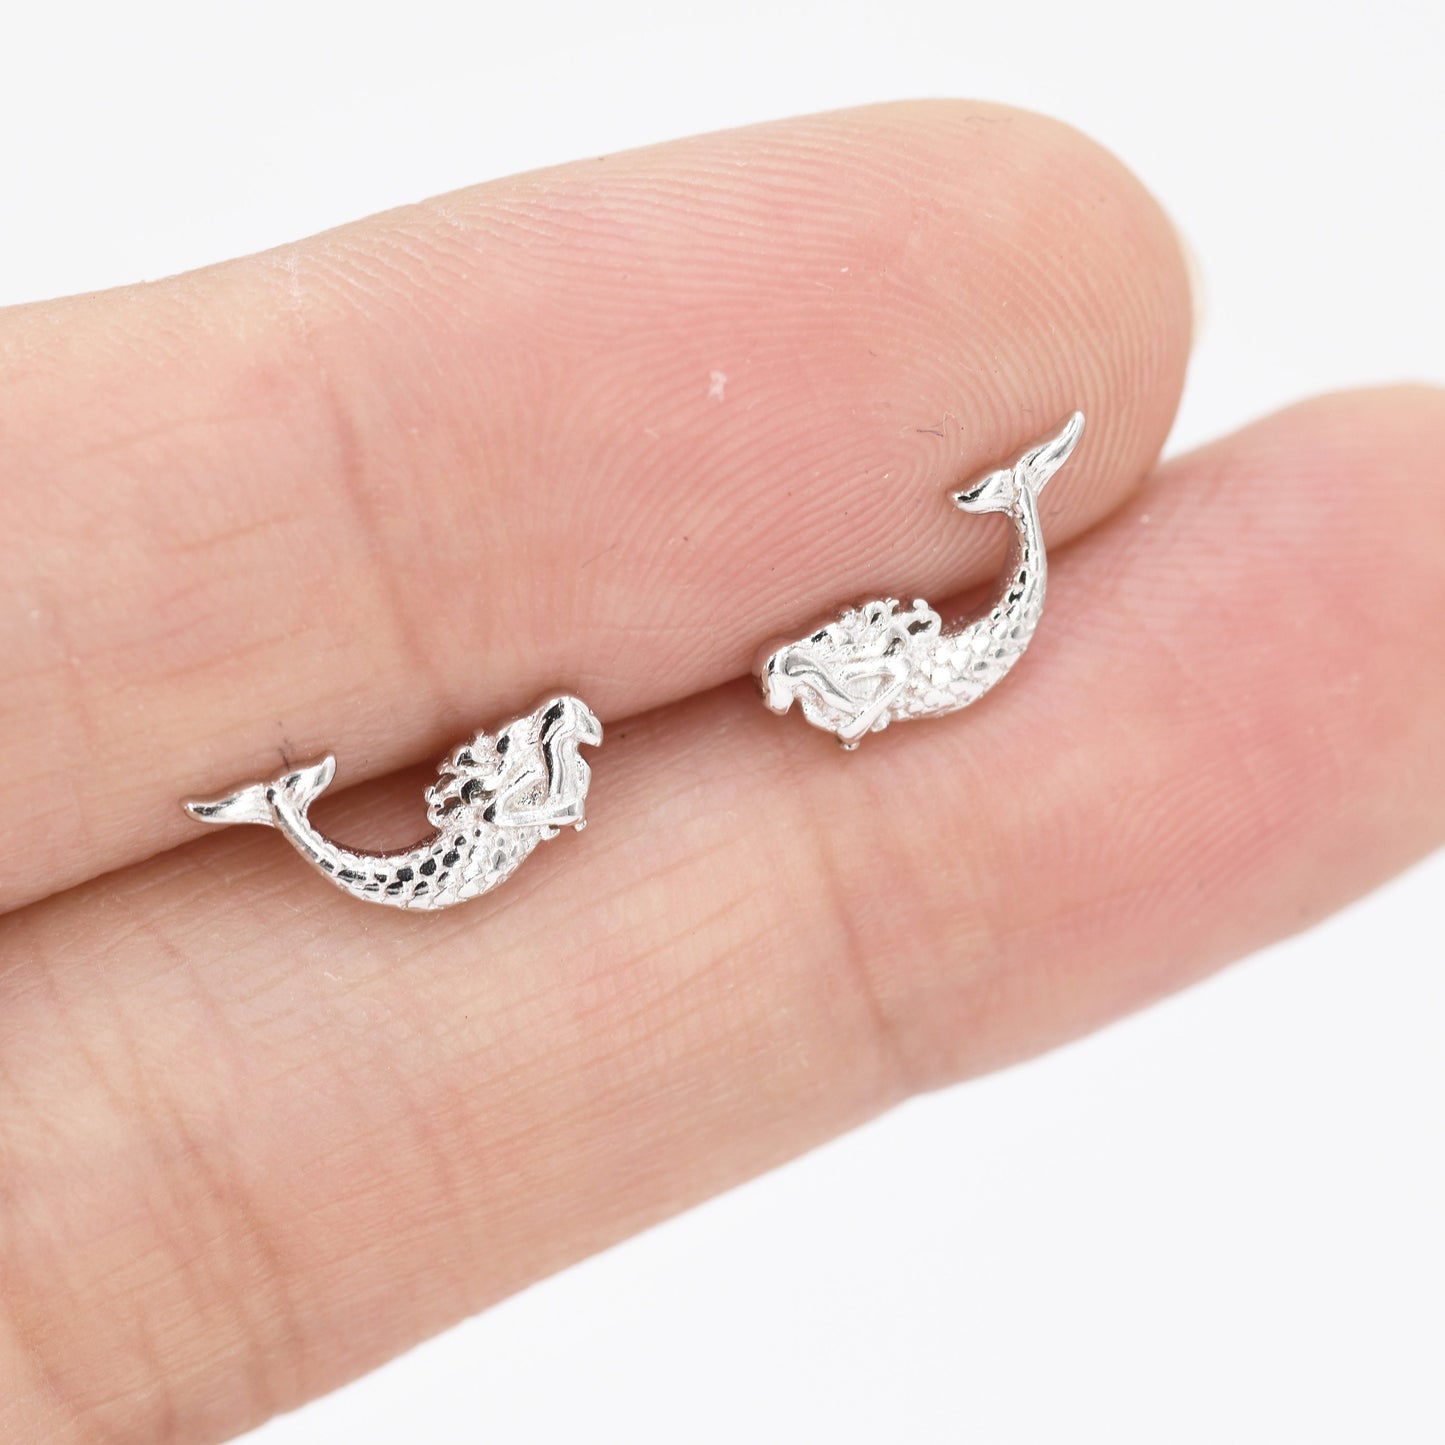 Mermaid Stud Earrings in Sterling Silver, Silver or Gold, Mermaid Fish Earrings, Fun and Dainty